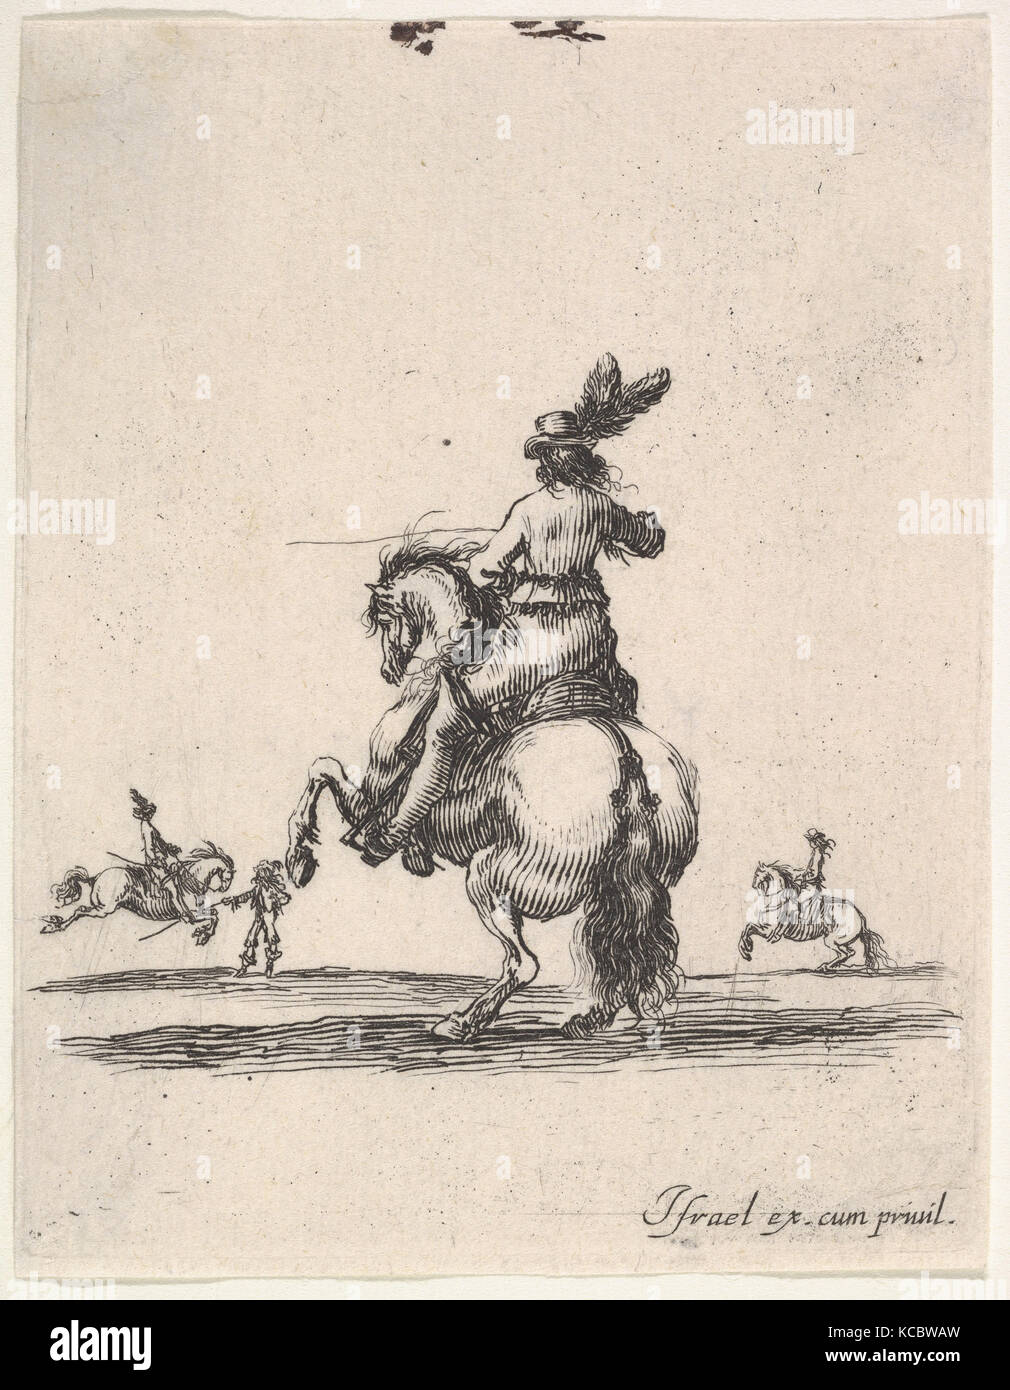 Un cavalier sur un cheval d'élevage, vu de derrière et se tourna vers la gauche, deux cavaliers à l'arrière-plan Banque D'Images